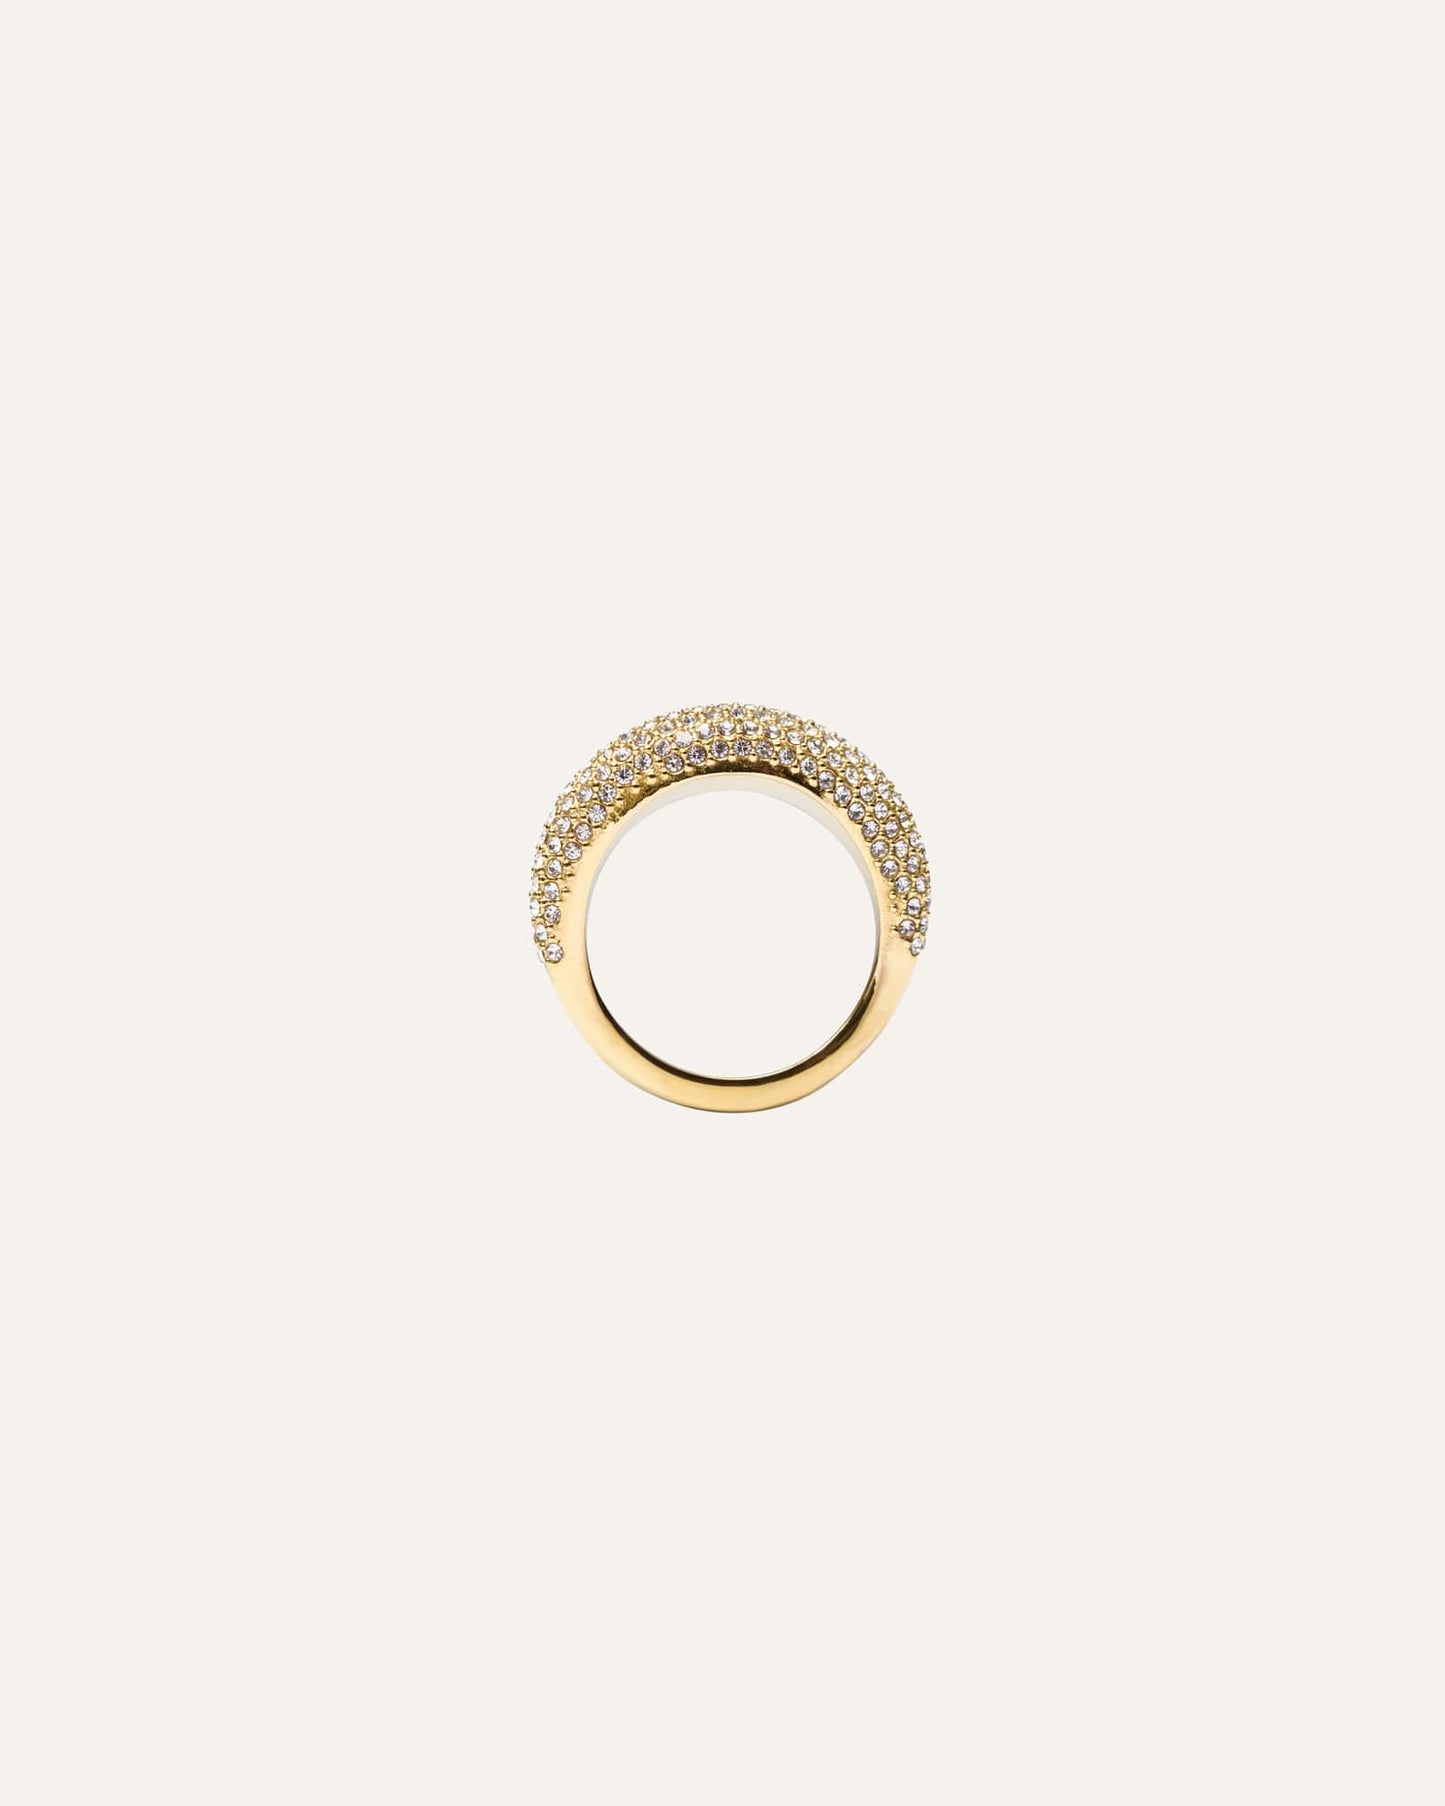 Pavé daring gold ring